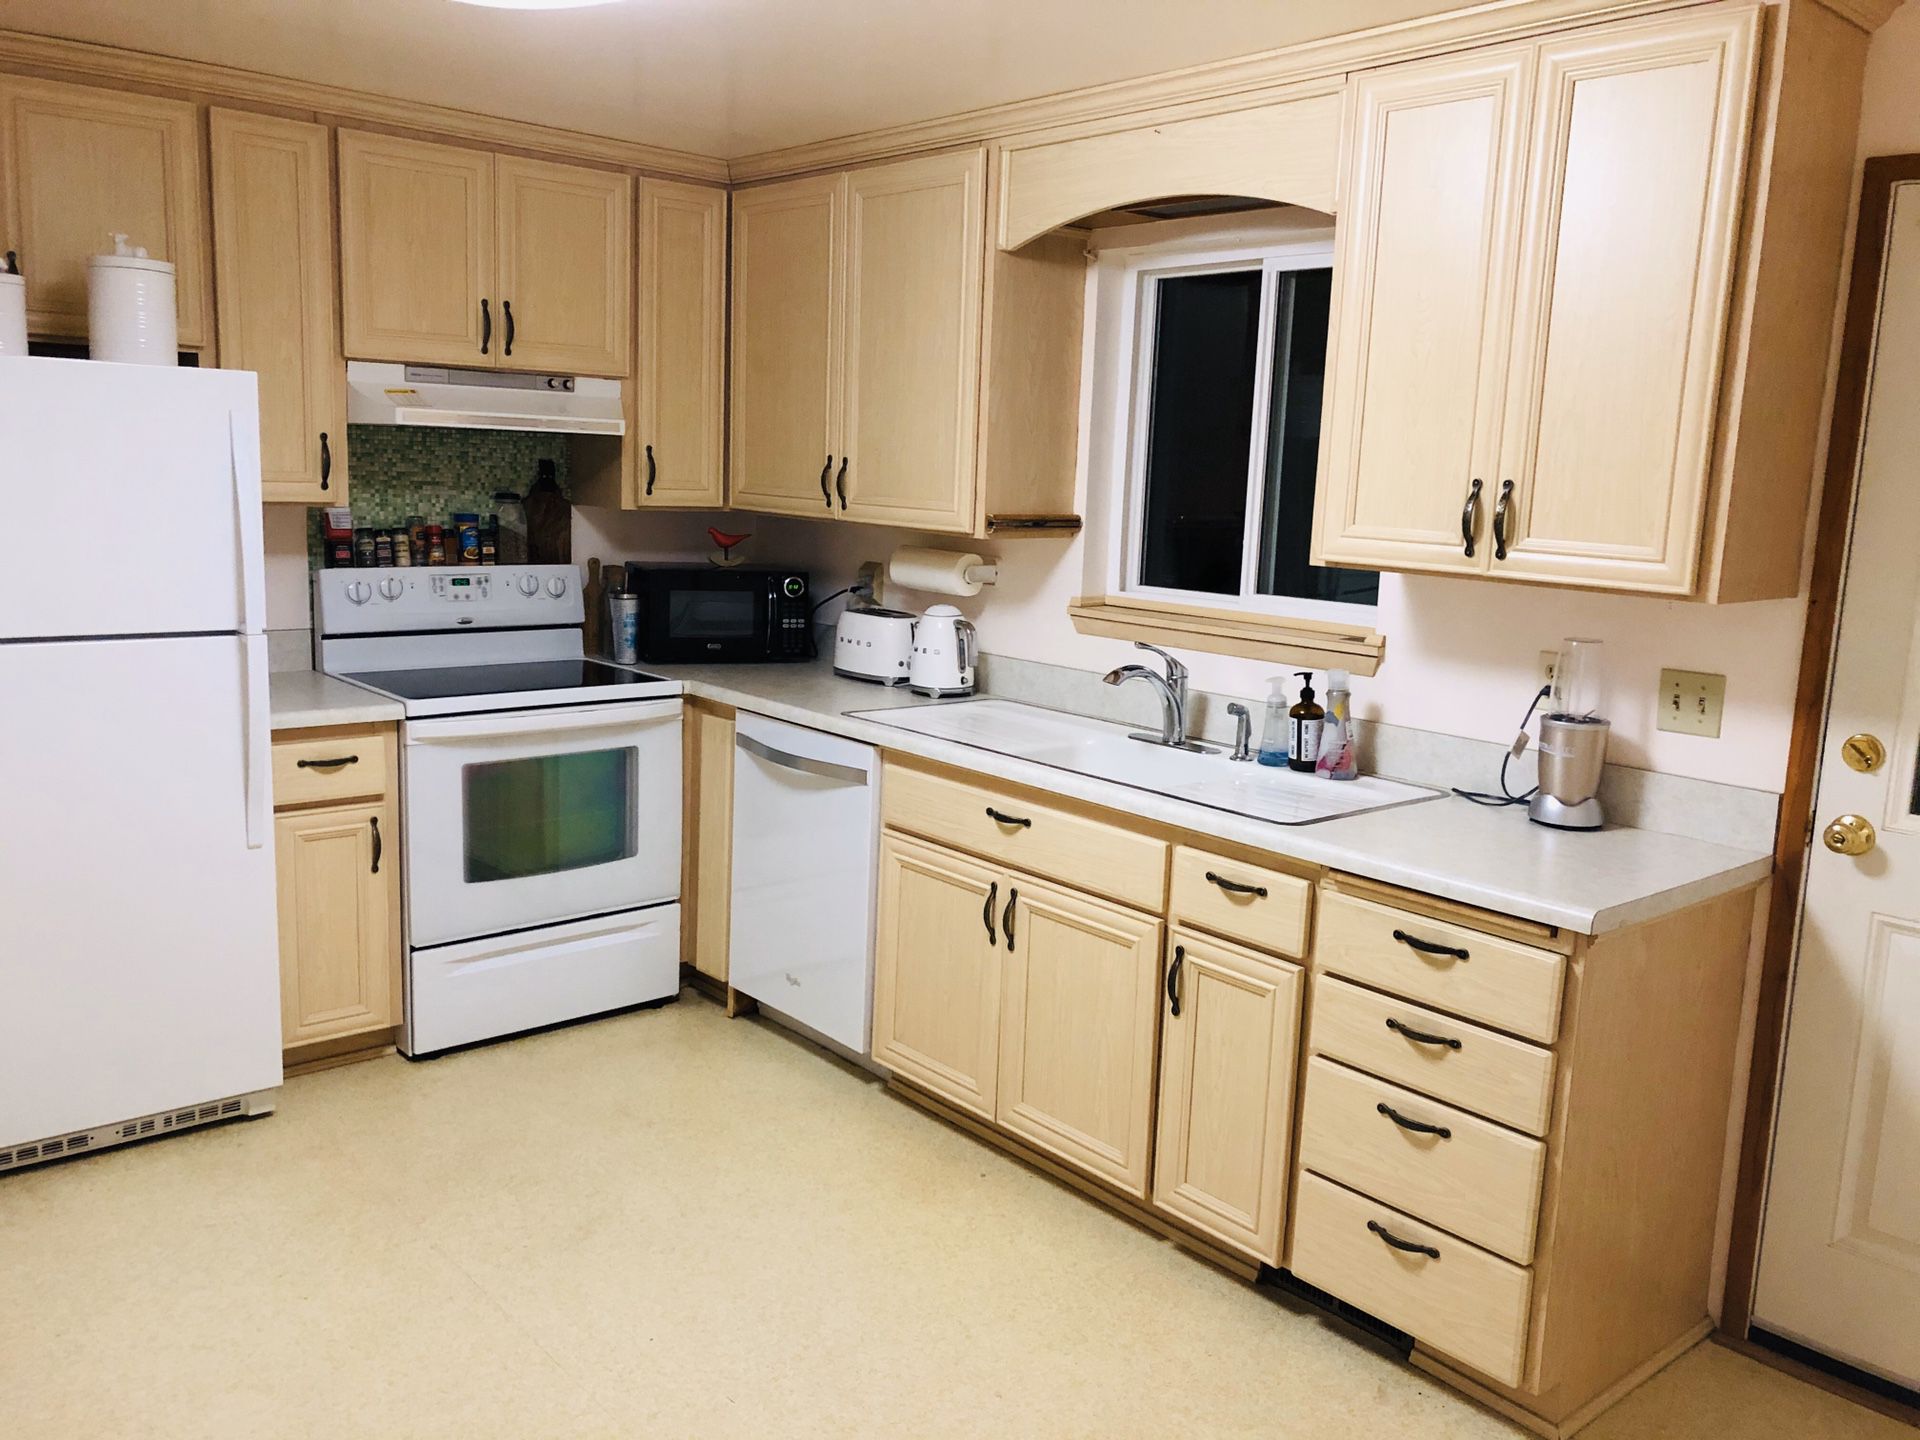 Kitchen cabinets,kitchen island